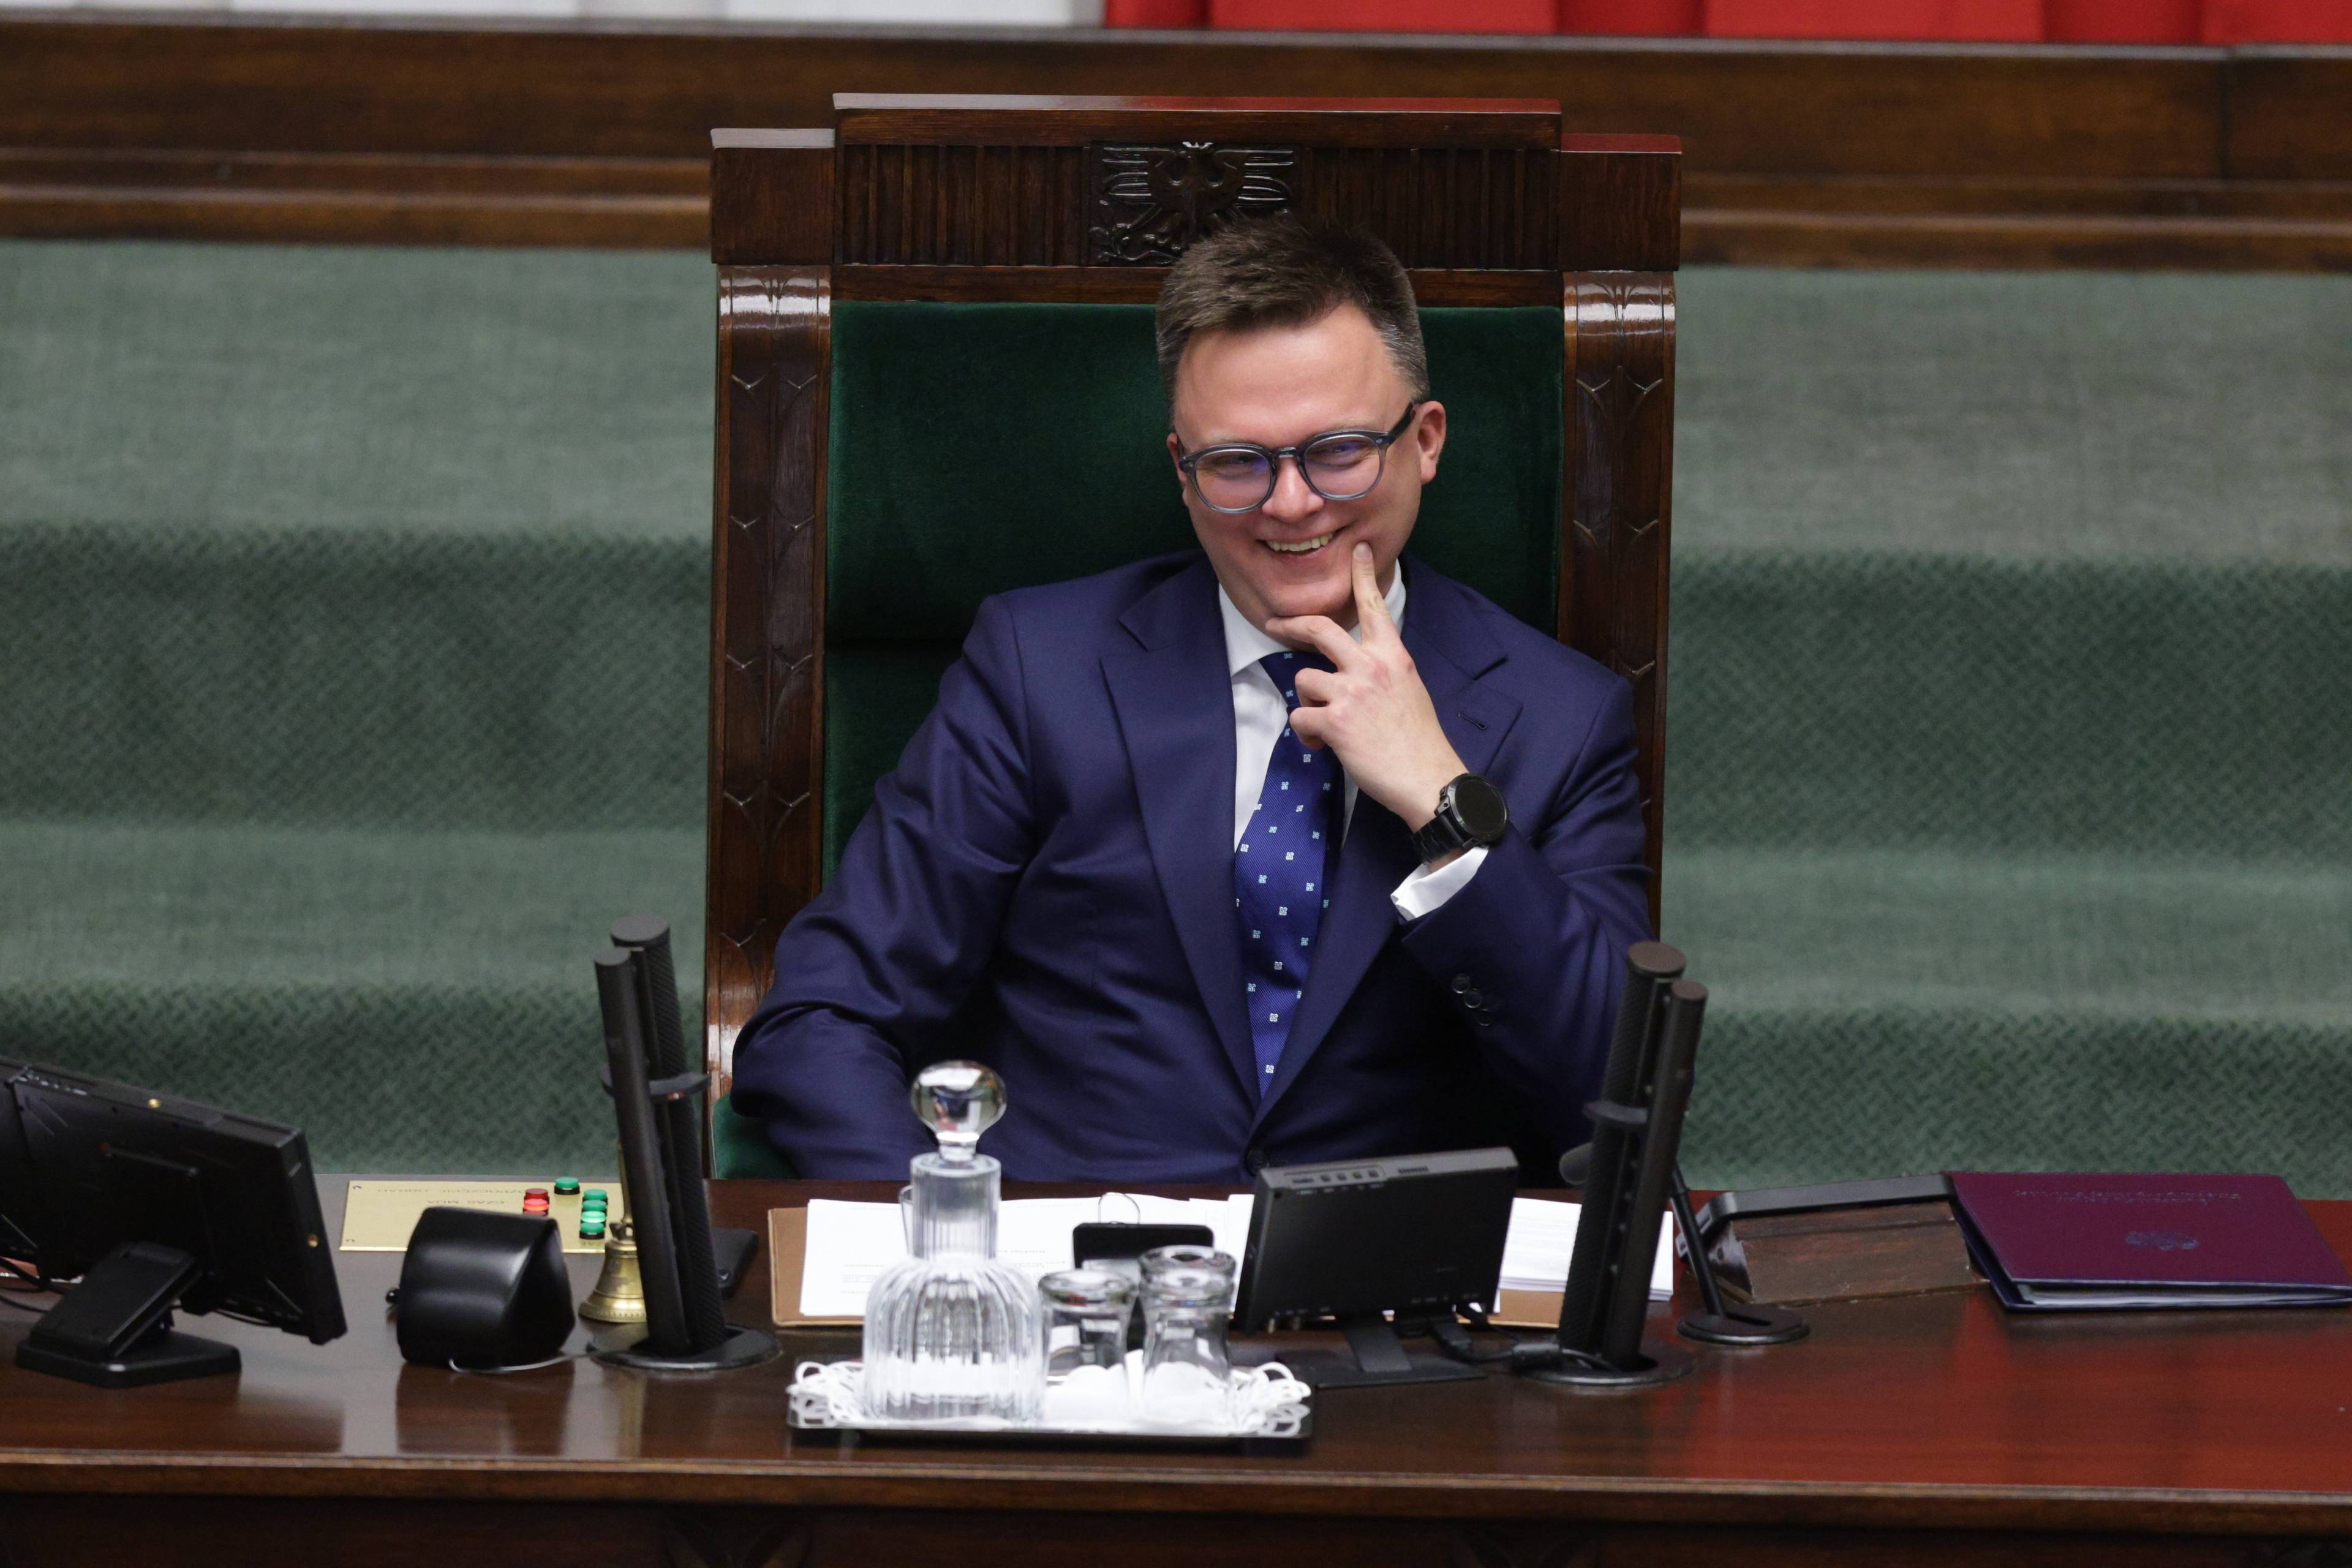 Marszałewk Hołownia na swoim miejscu w Sejmie